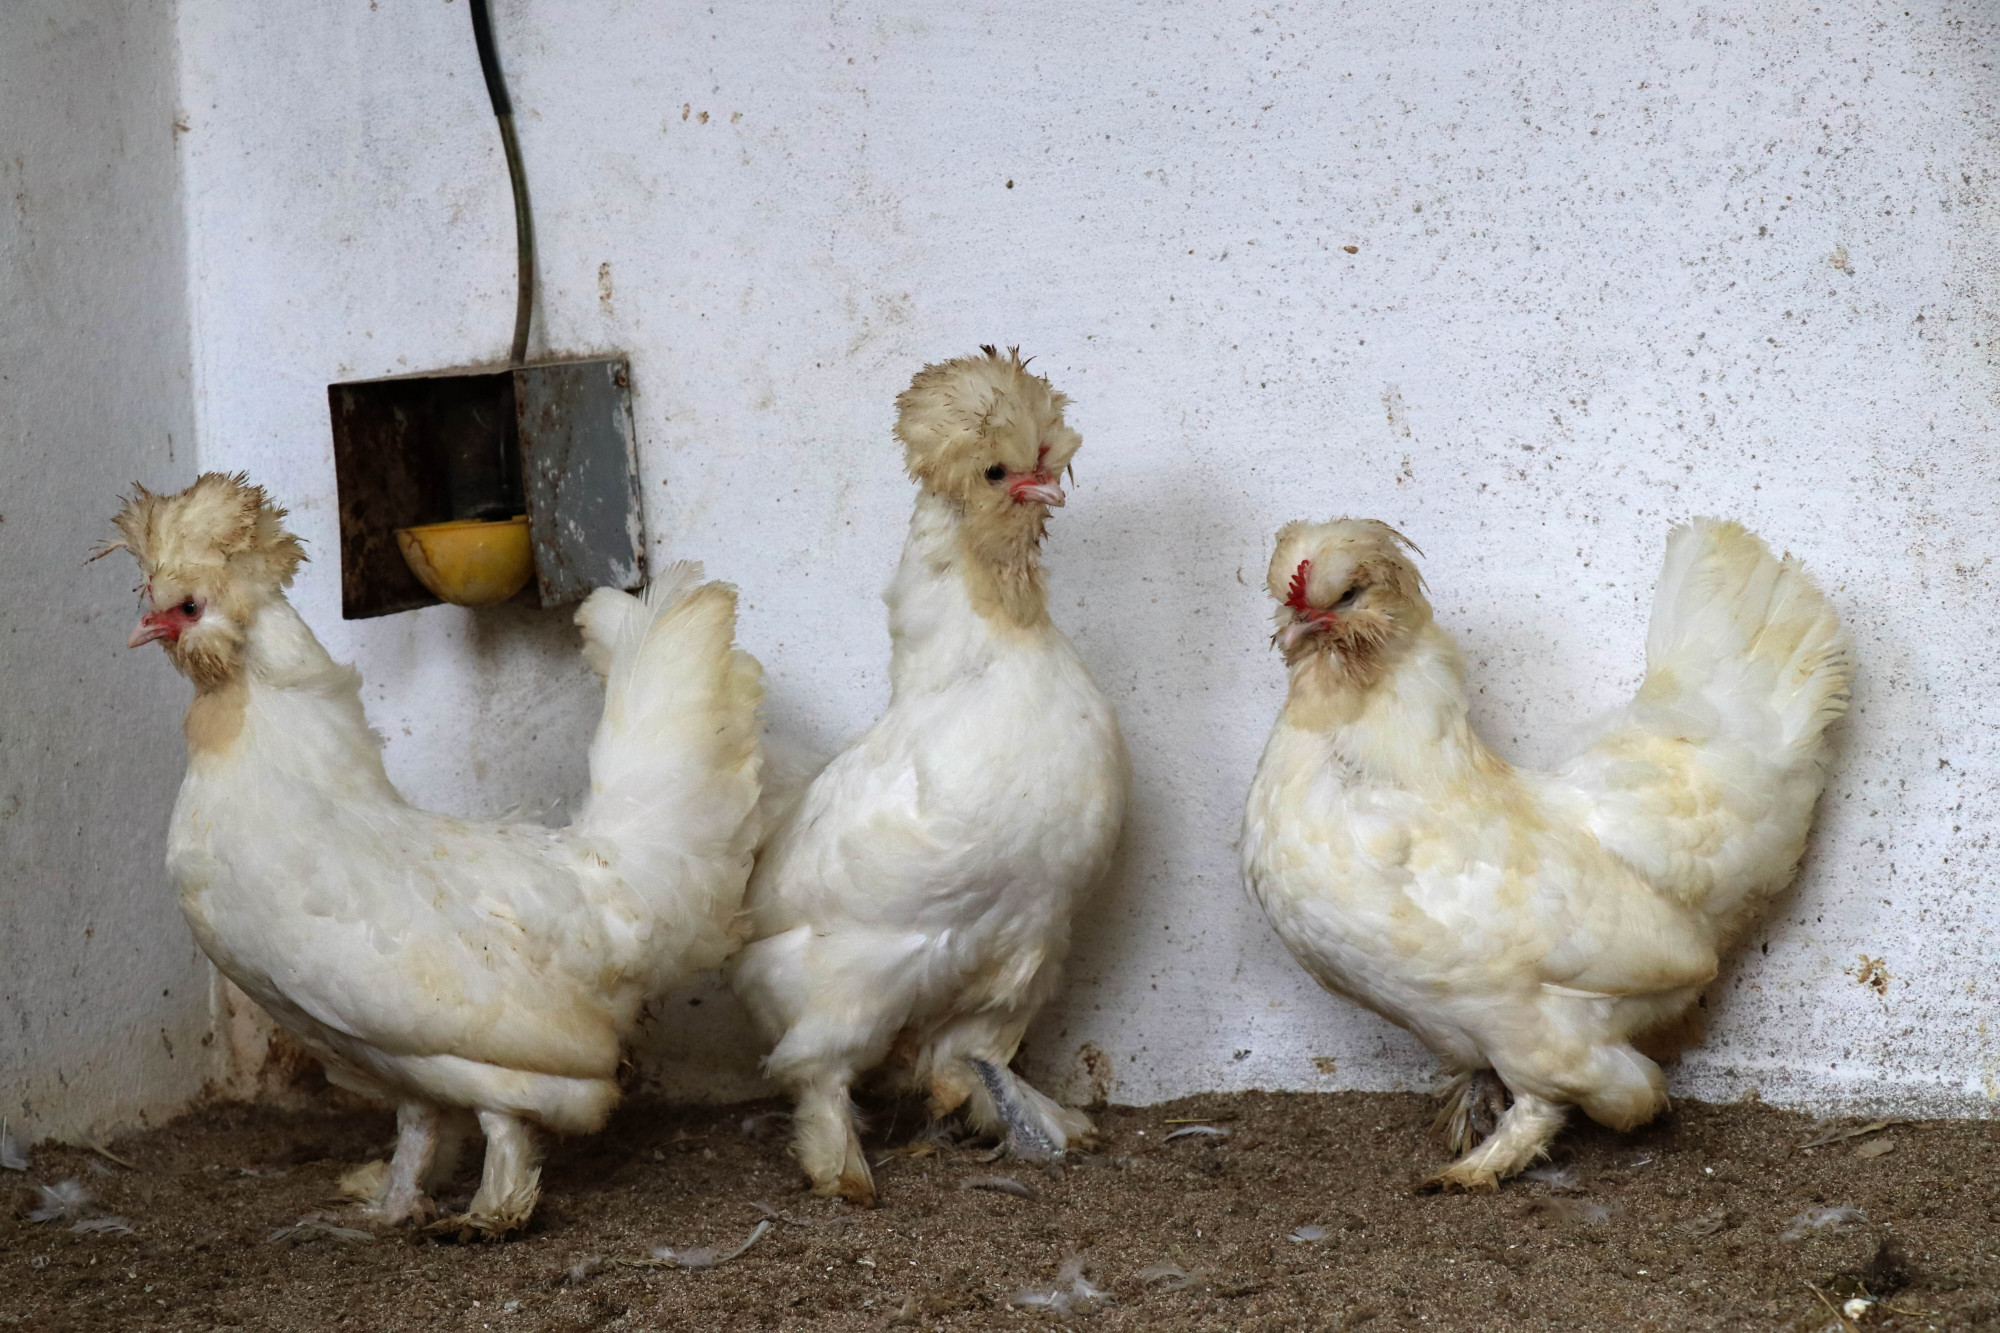 Megkapta az amerikai engedélyt a laborban előállított csirkehús